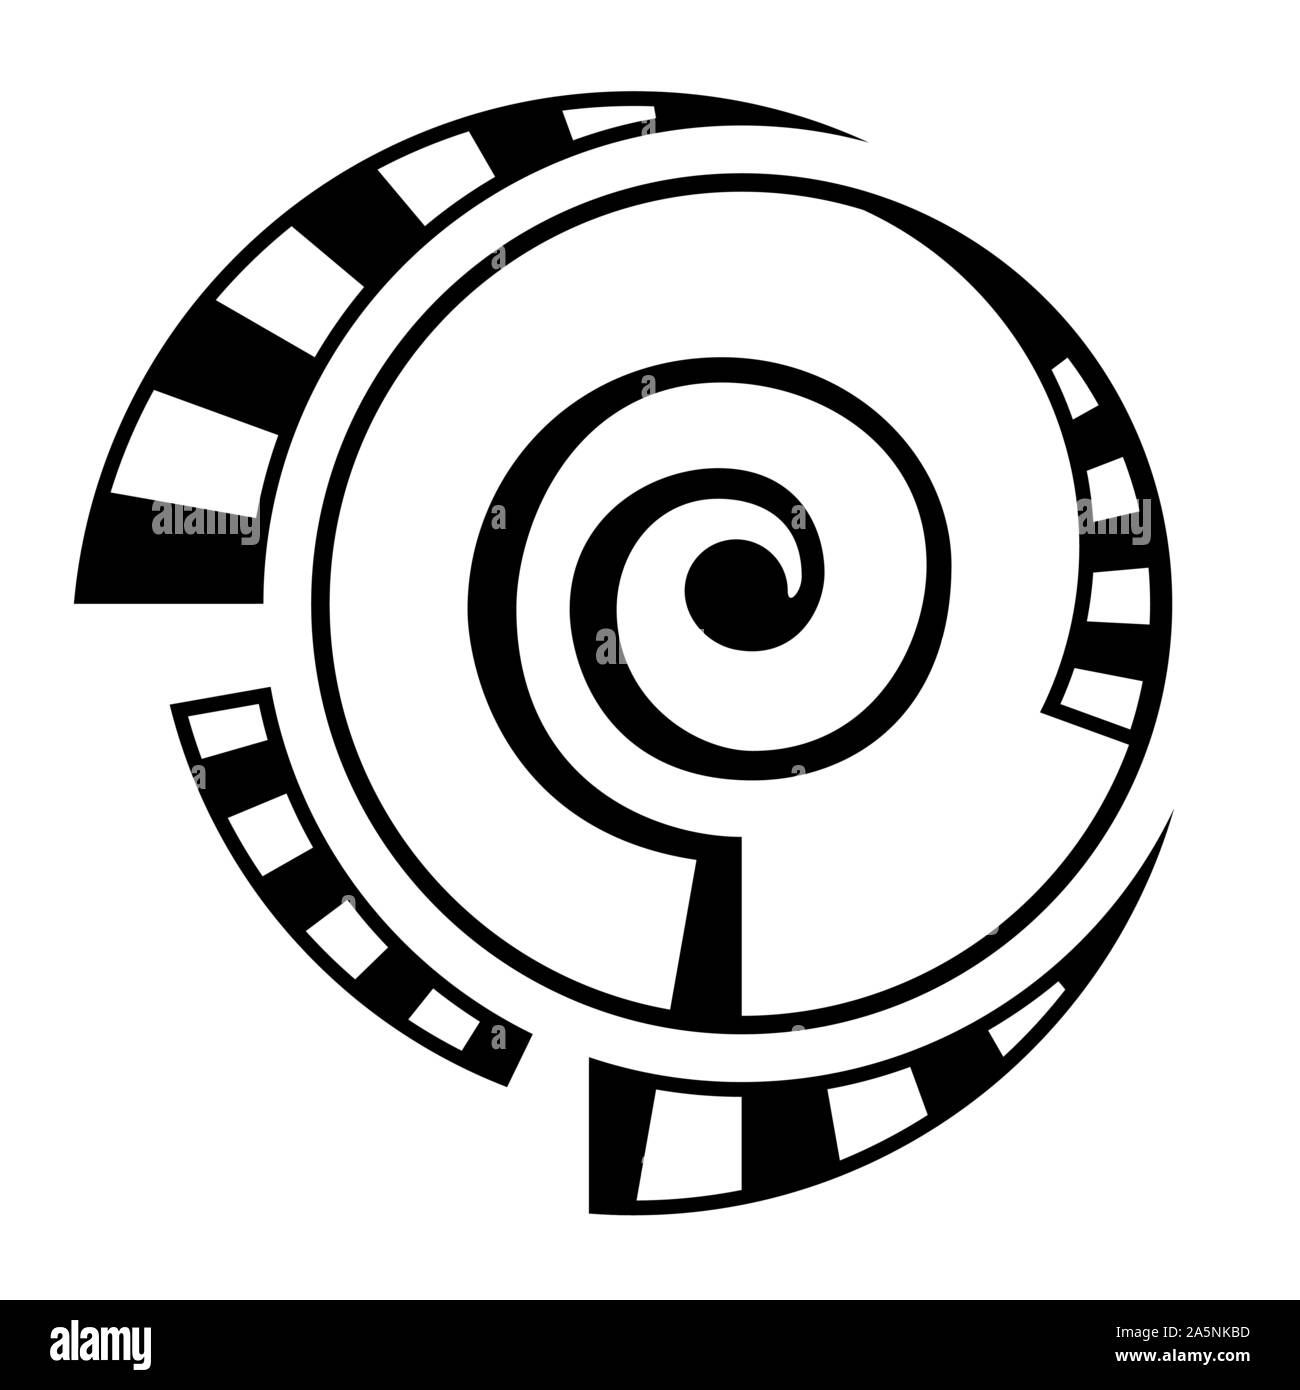 Abstrakte geometrische Symbol auf weißem Hintergrund. Spirale, runde Form. Spirale Element mit gestrichelten Linien, segmentiert. Lineare Logo. Stock Vektor